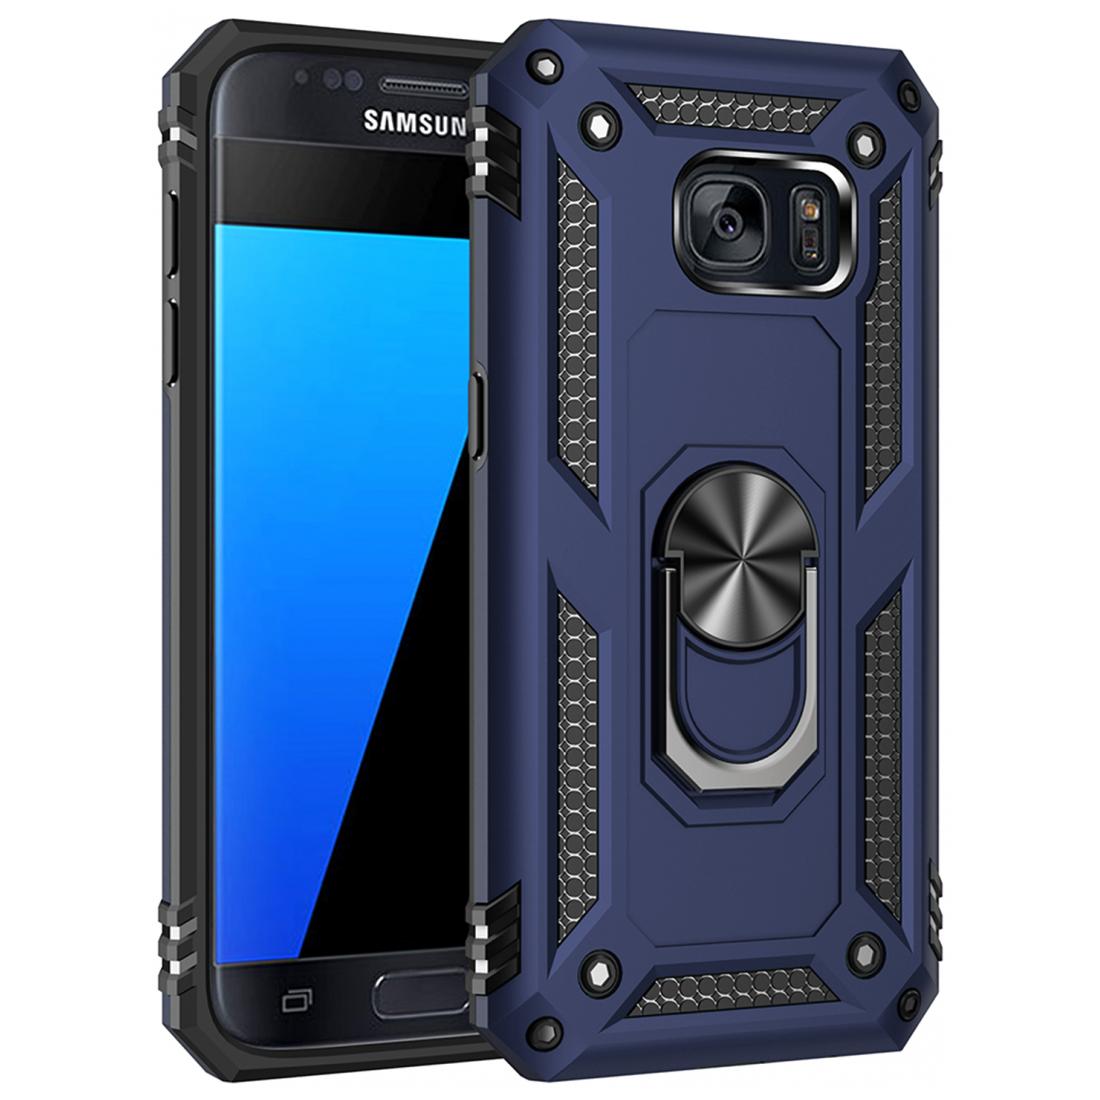 Handy Hülle für Samsung Galaxy S7 S8 S9 Outdoor Panzer Case Smartphone Cover TOP